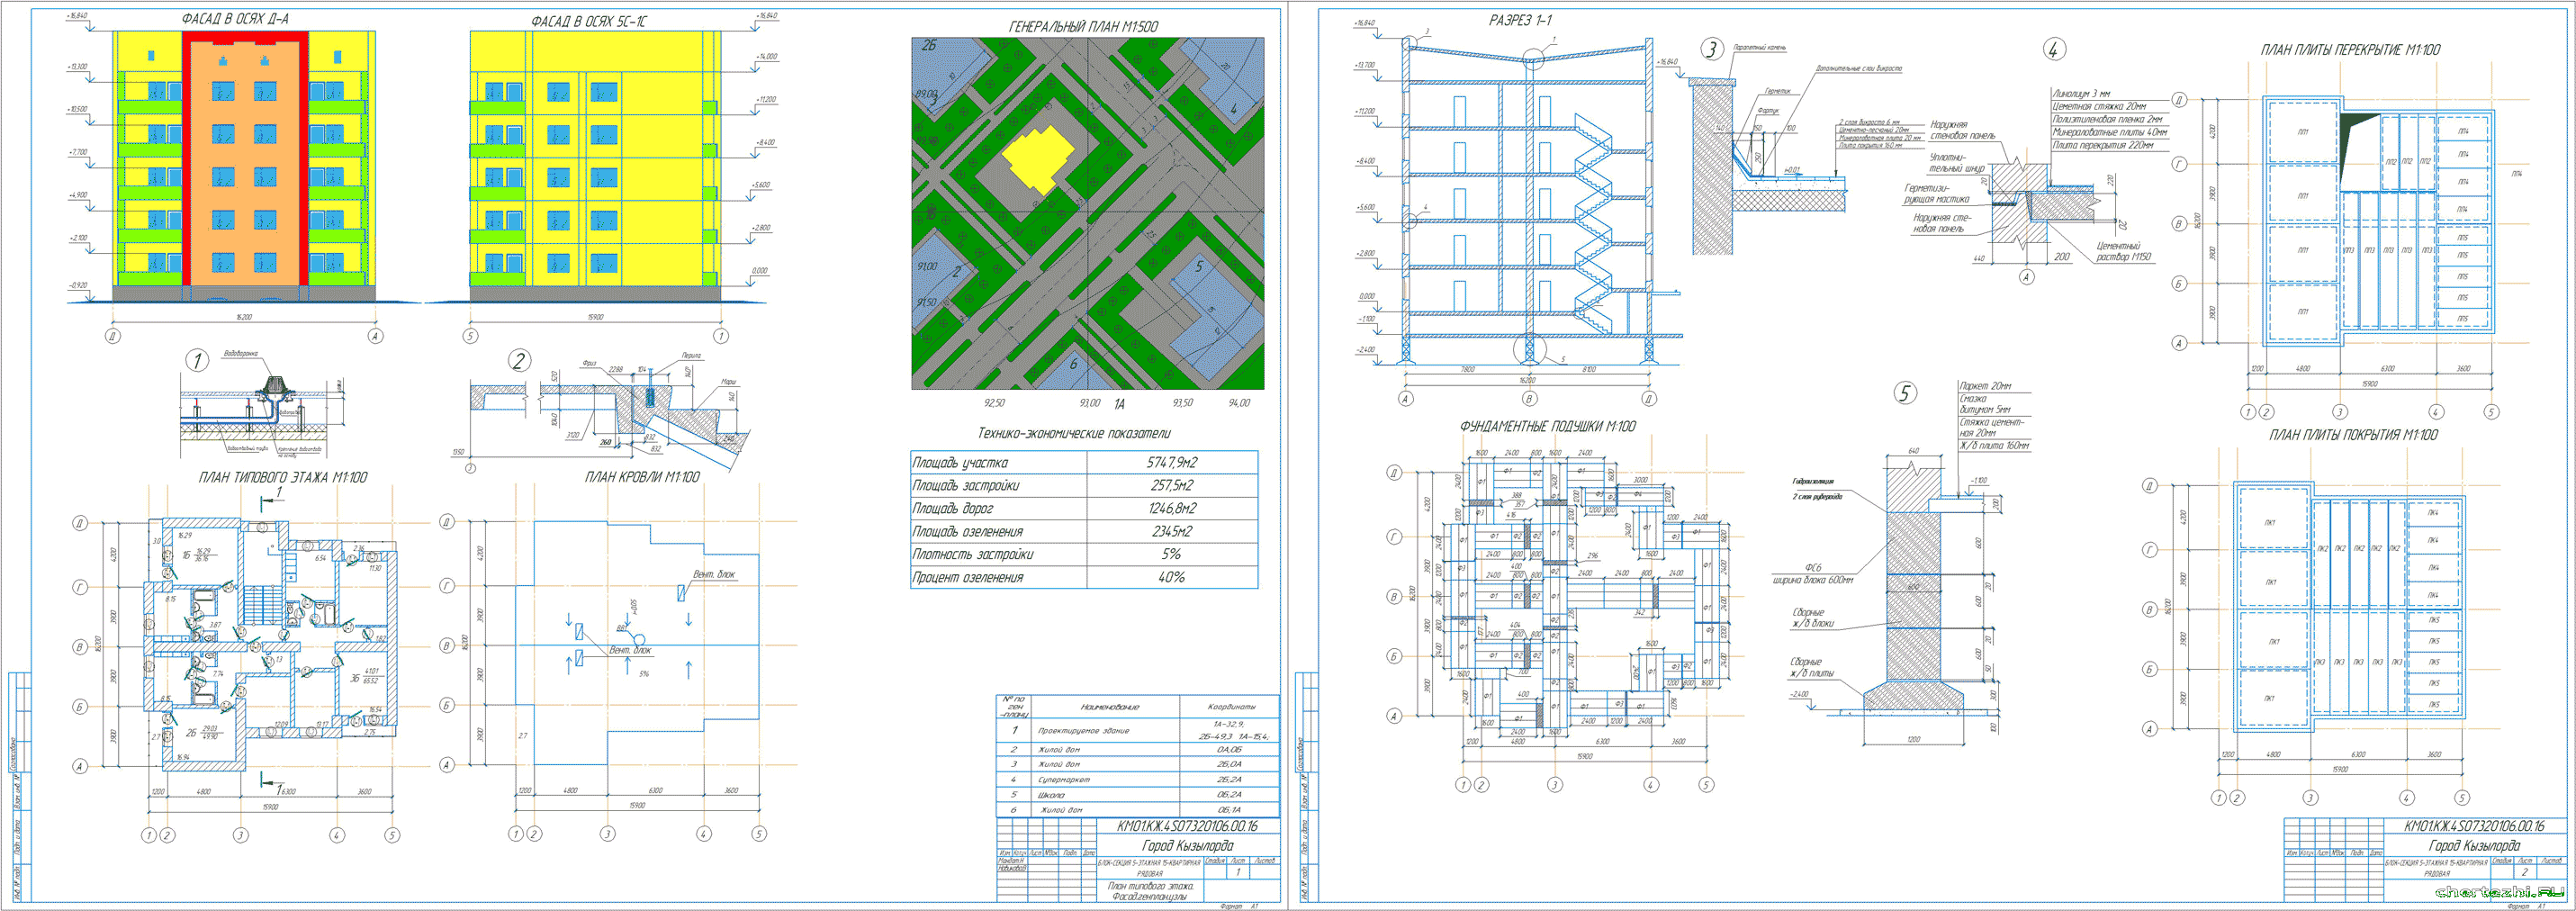 Курсовой проект (колледж) - 5-ти этажная 15-ти квартирная левая блок-секция 15,9 х 16,2 м в г. Кызылорда